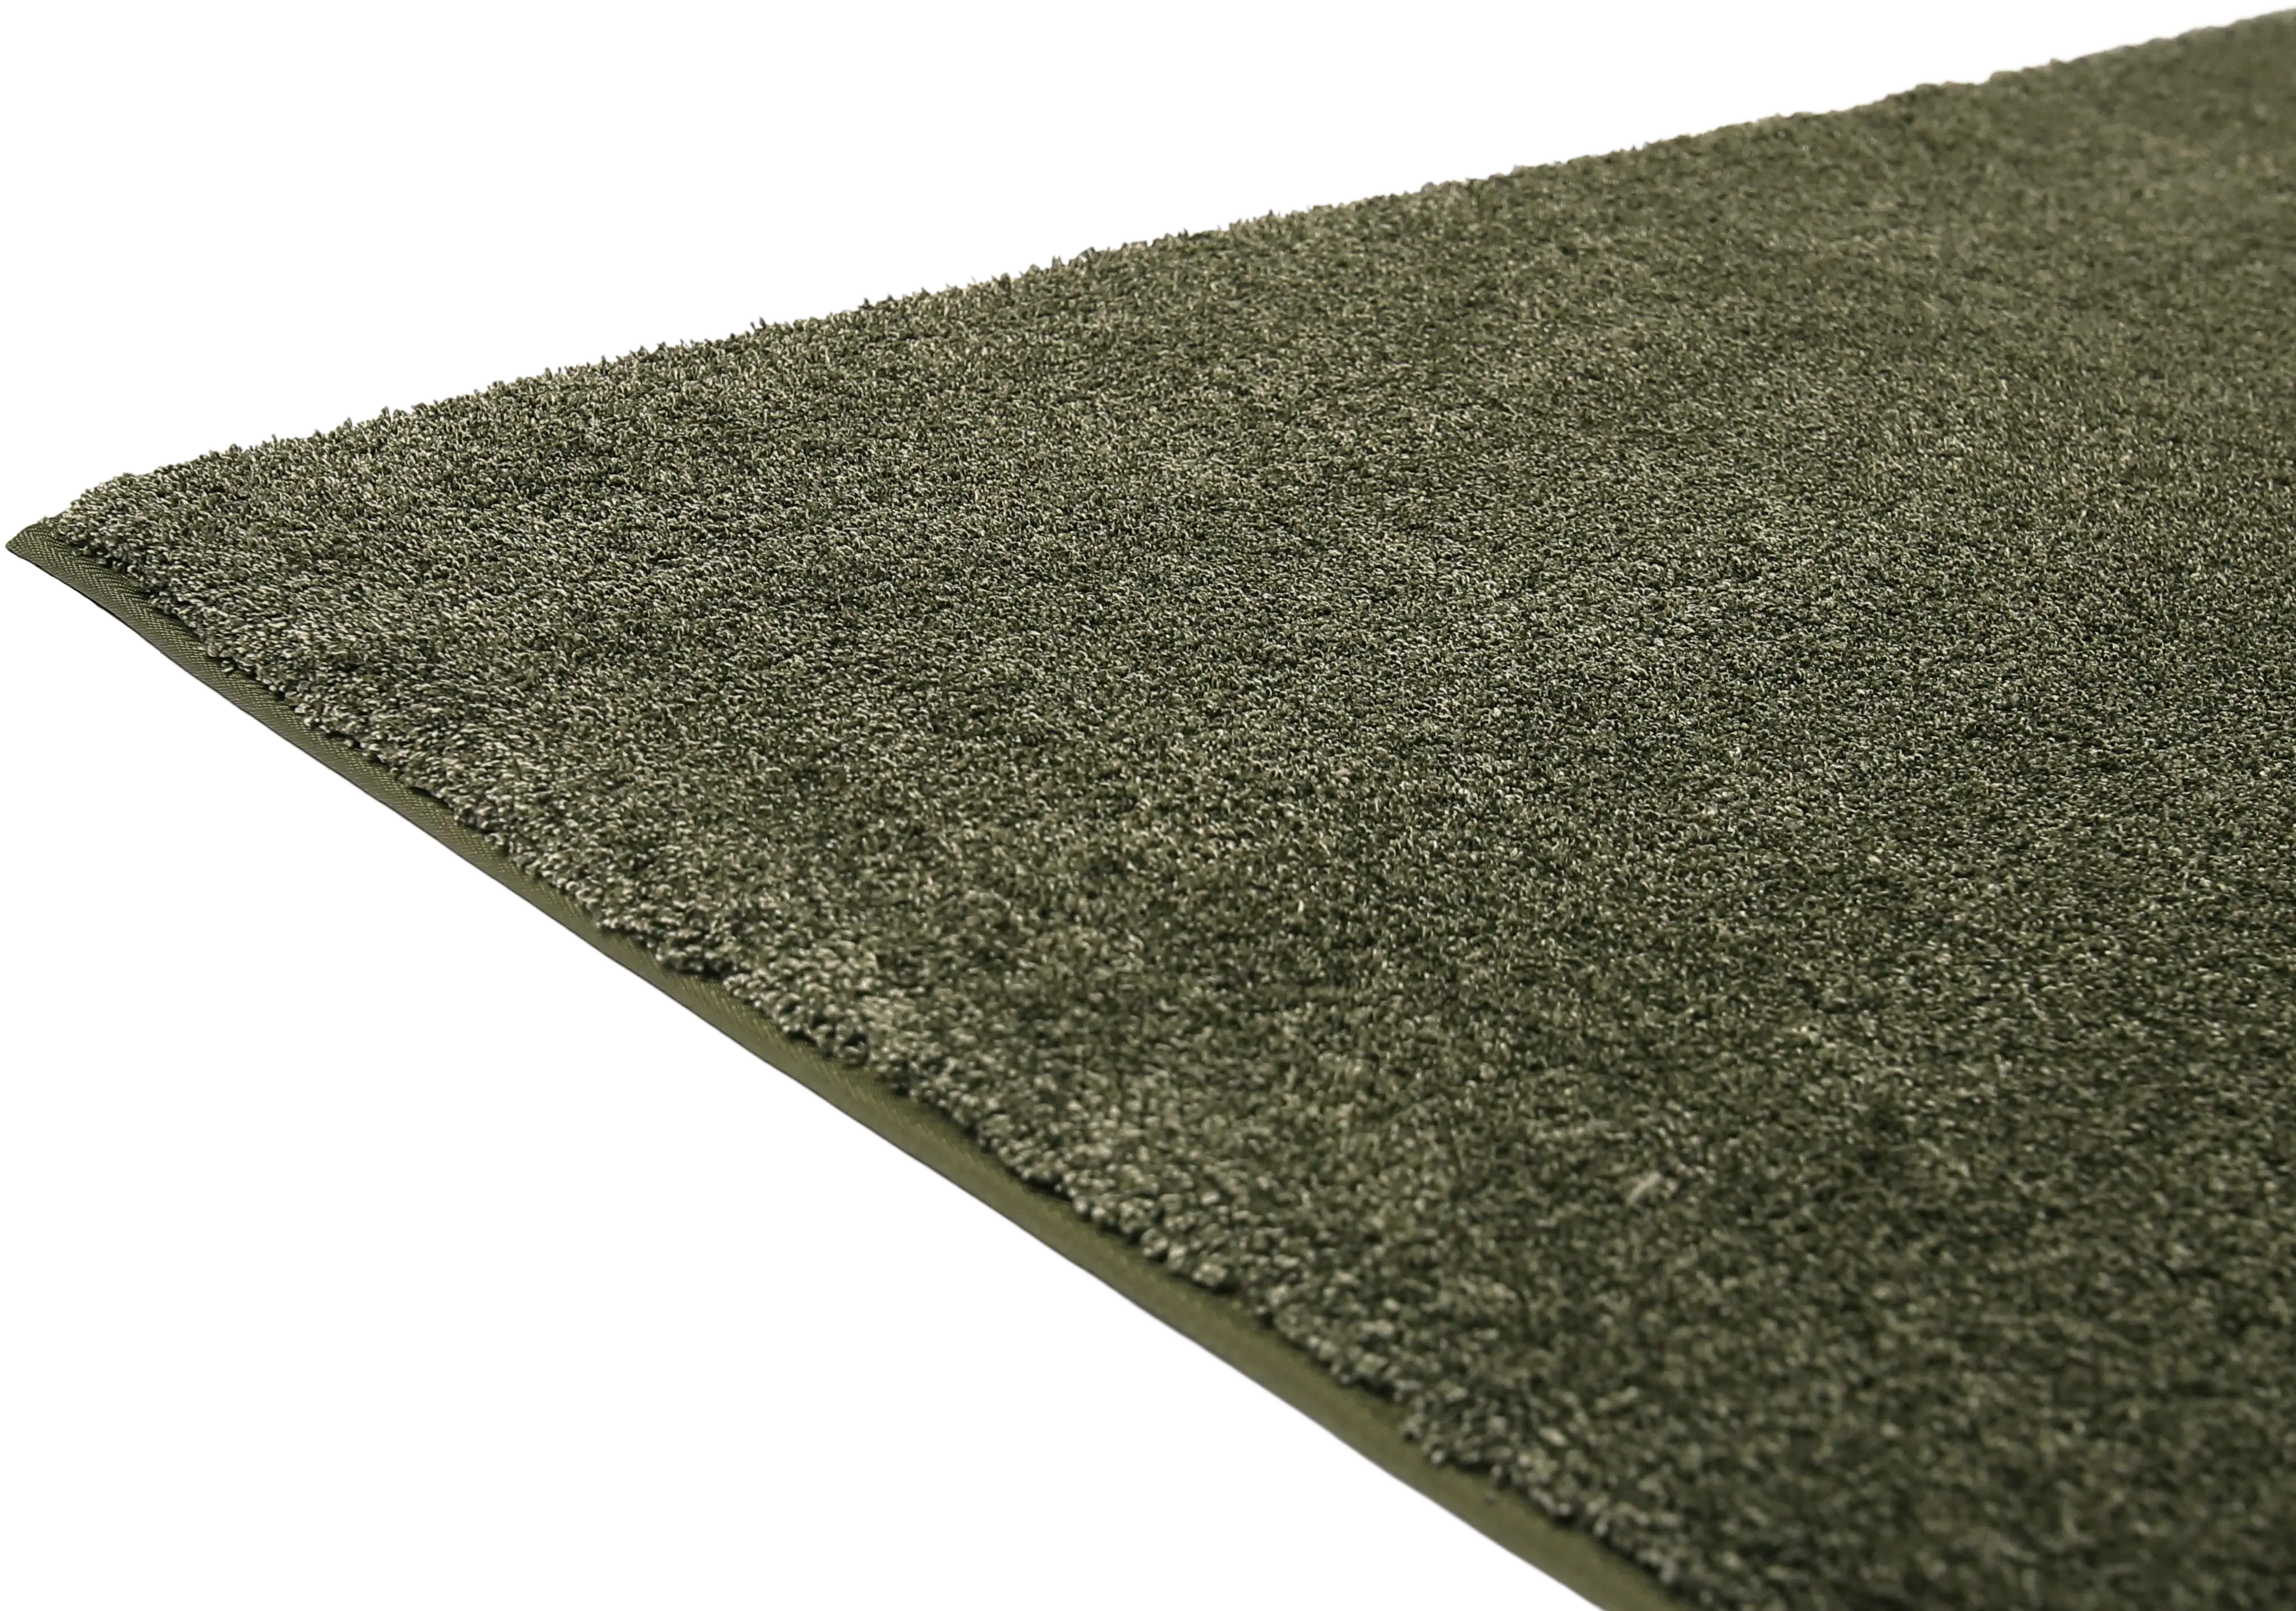 VM Carpet Sointu matto 200x300 cm, vihreä